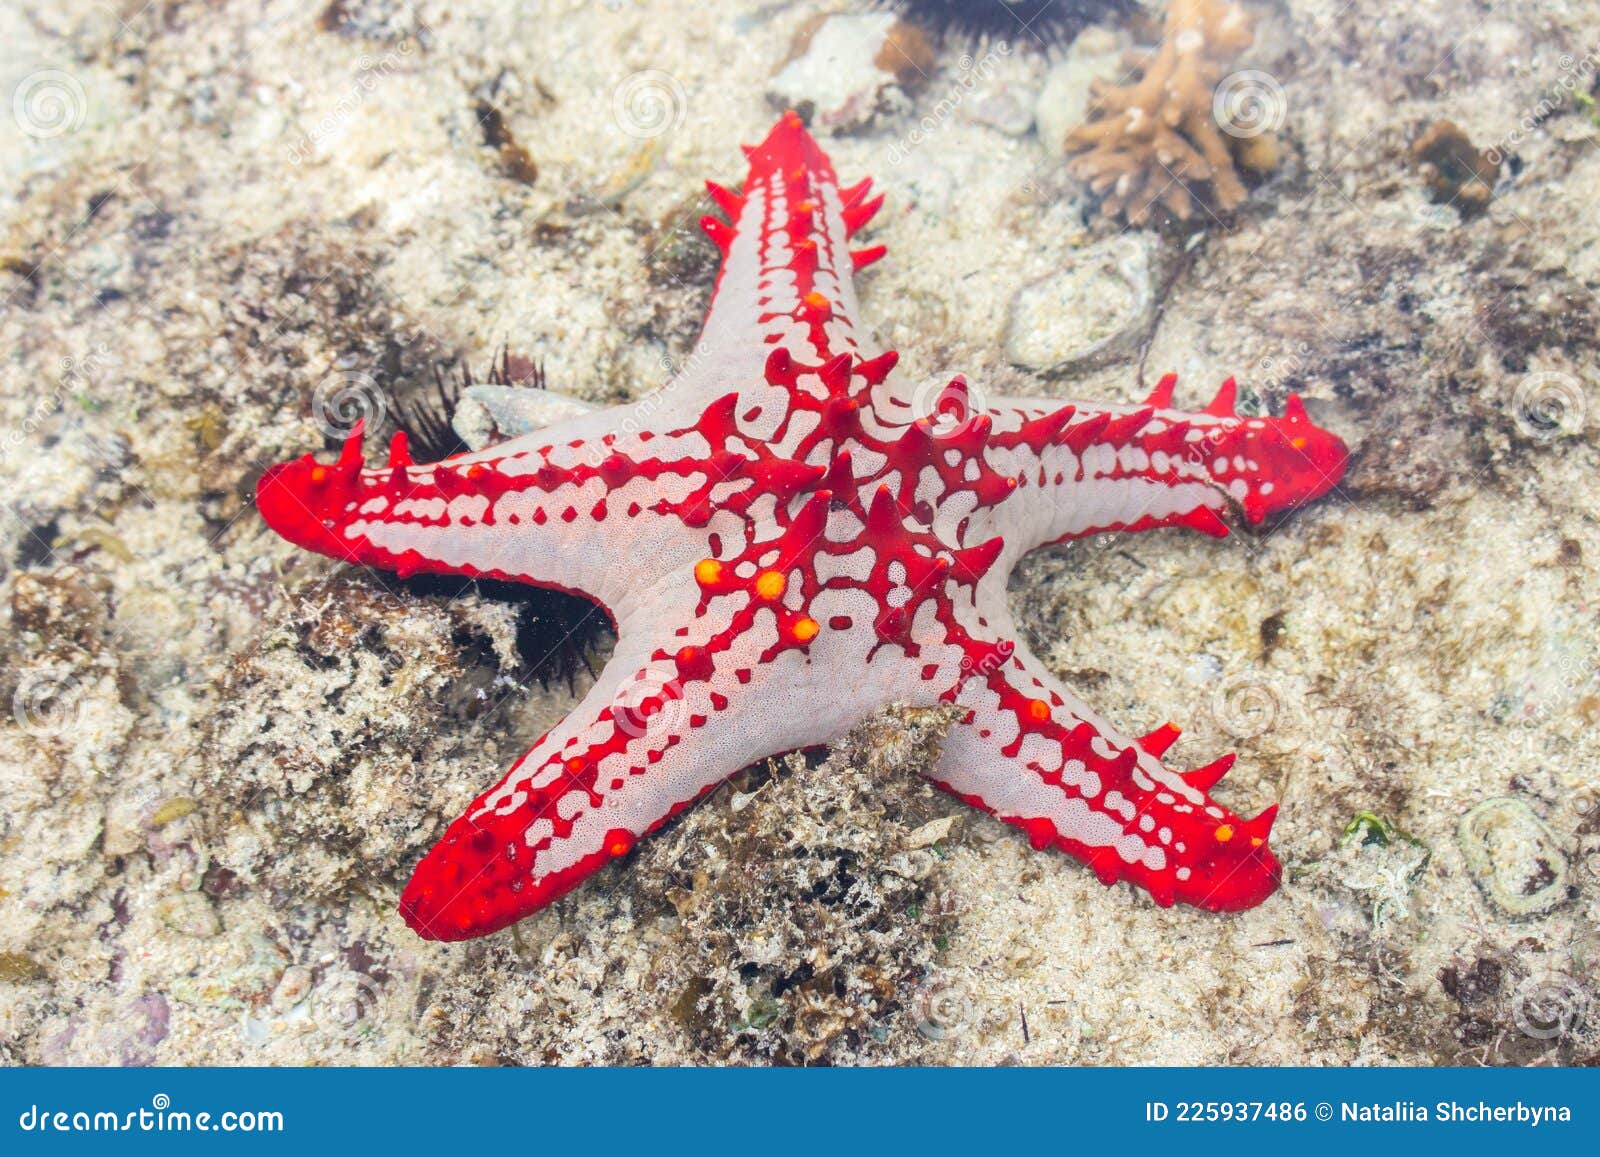 Red Star Fish Under Water Surface. Marine Life. Starfish on Sand. Underwater  Life. Nature in Tanzania, Zanzibar Stock Photo - Image of fish, ecology:  225937486